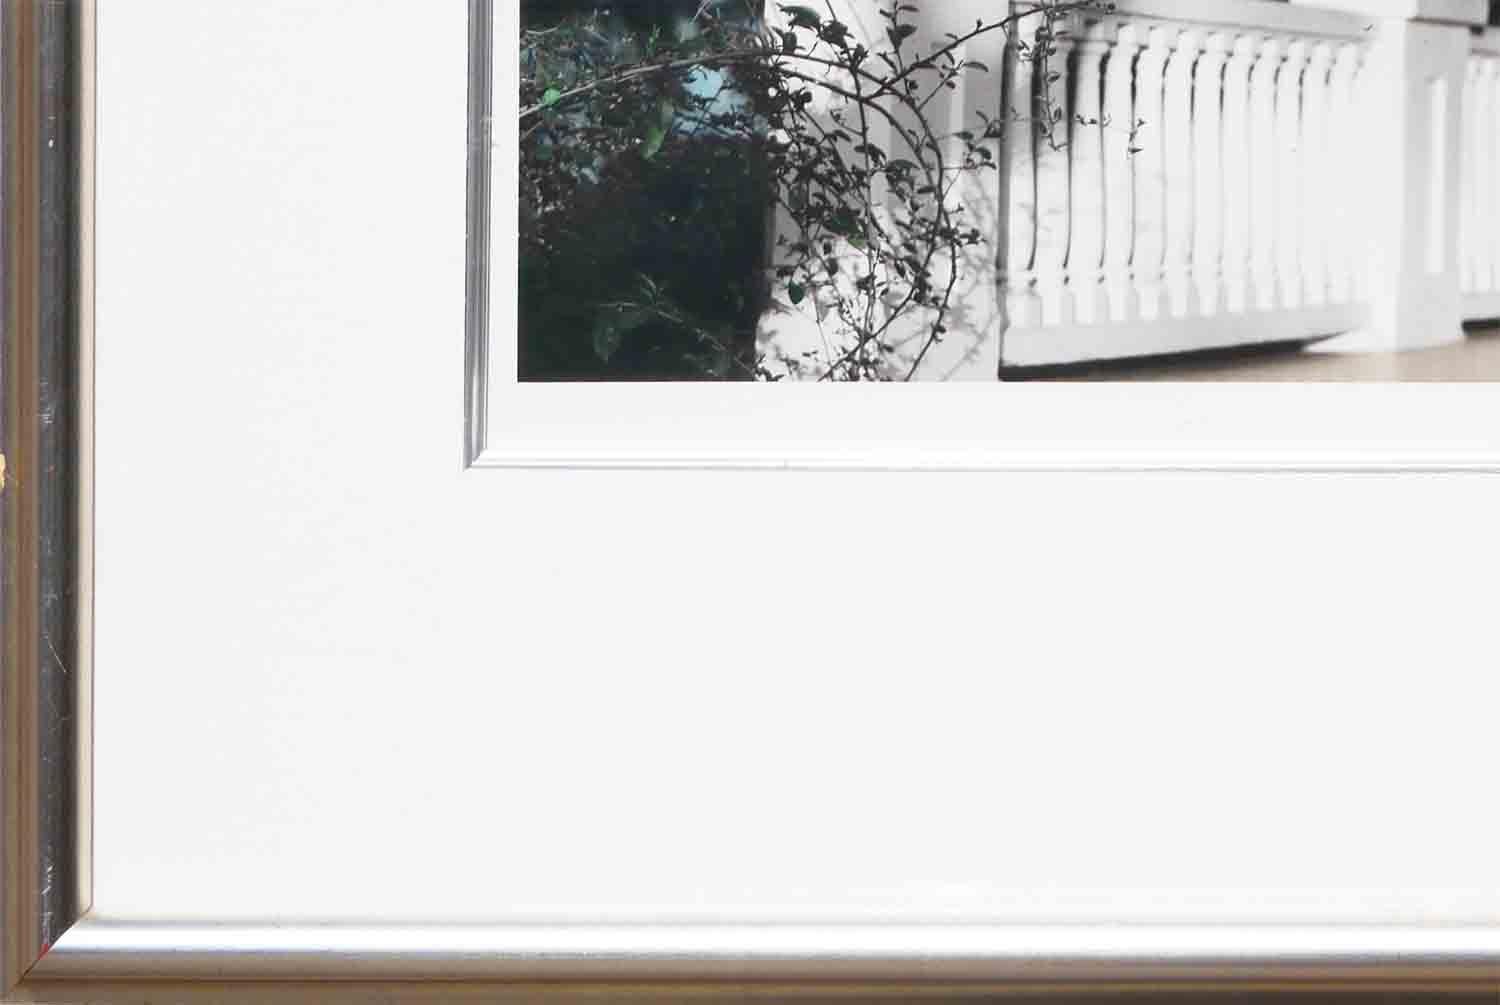 Kontrastreiche zeitgenössische Fotografie des Fotografen Casey Williams aus Houston, TX. Dieses Foto zeigt einen Schnappschuss eines Balkons oder einer Terrasse mit weißem Holzgeländer und Pfosten. Die Farben auf den Fotos lassen vermuten, dass sie